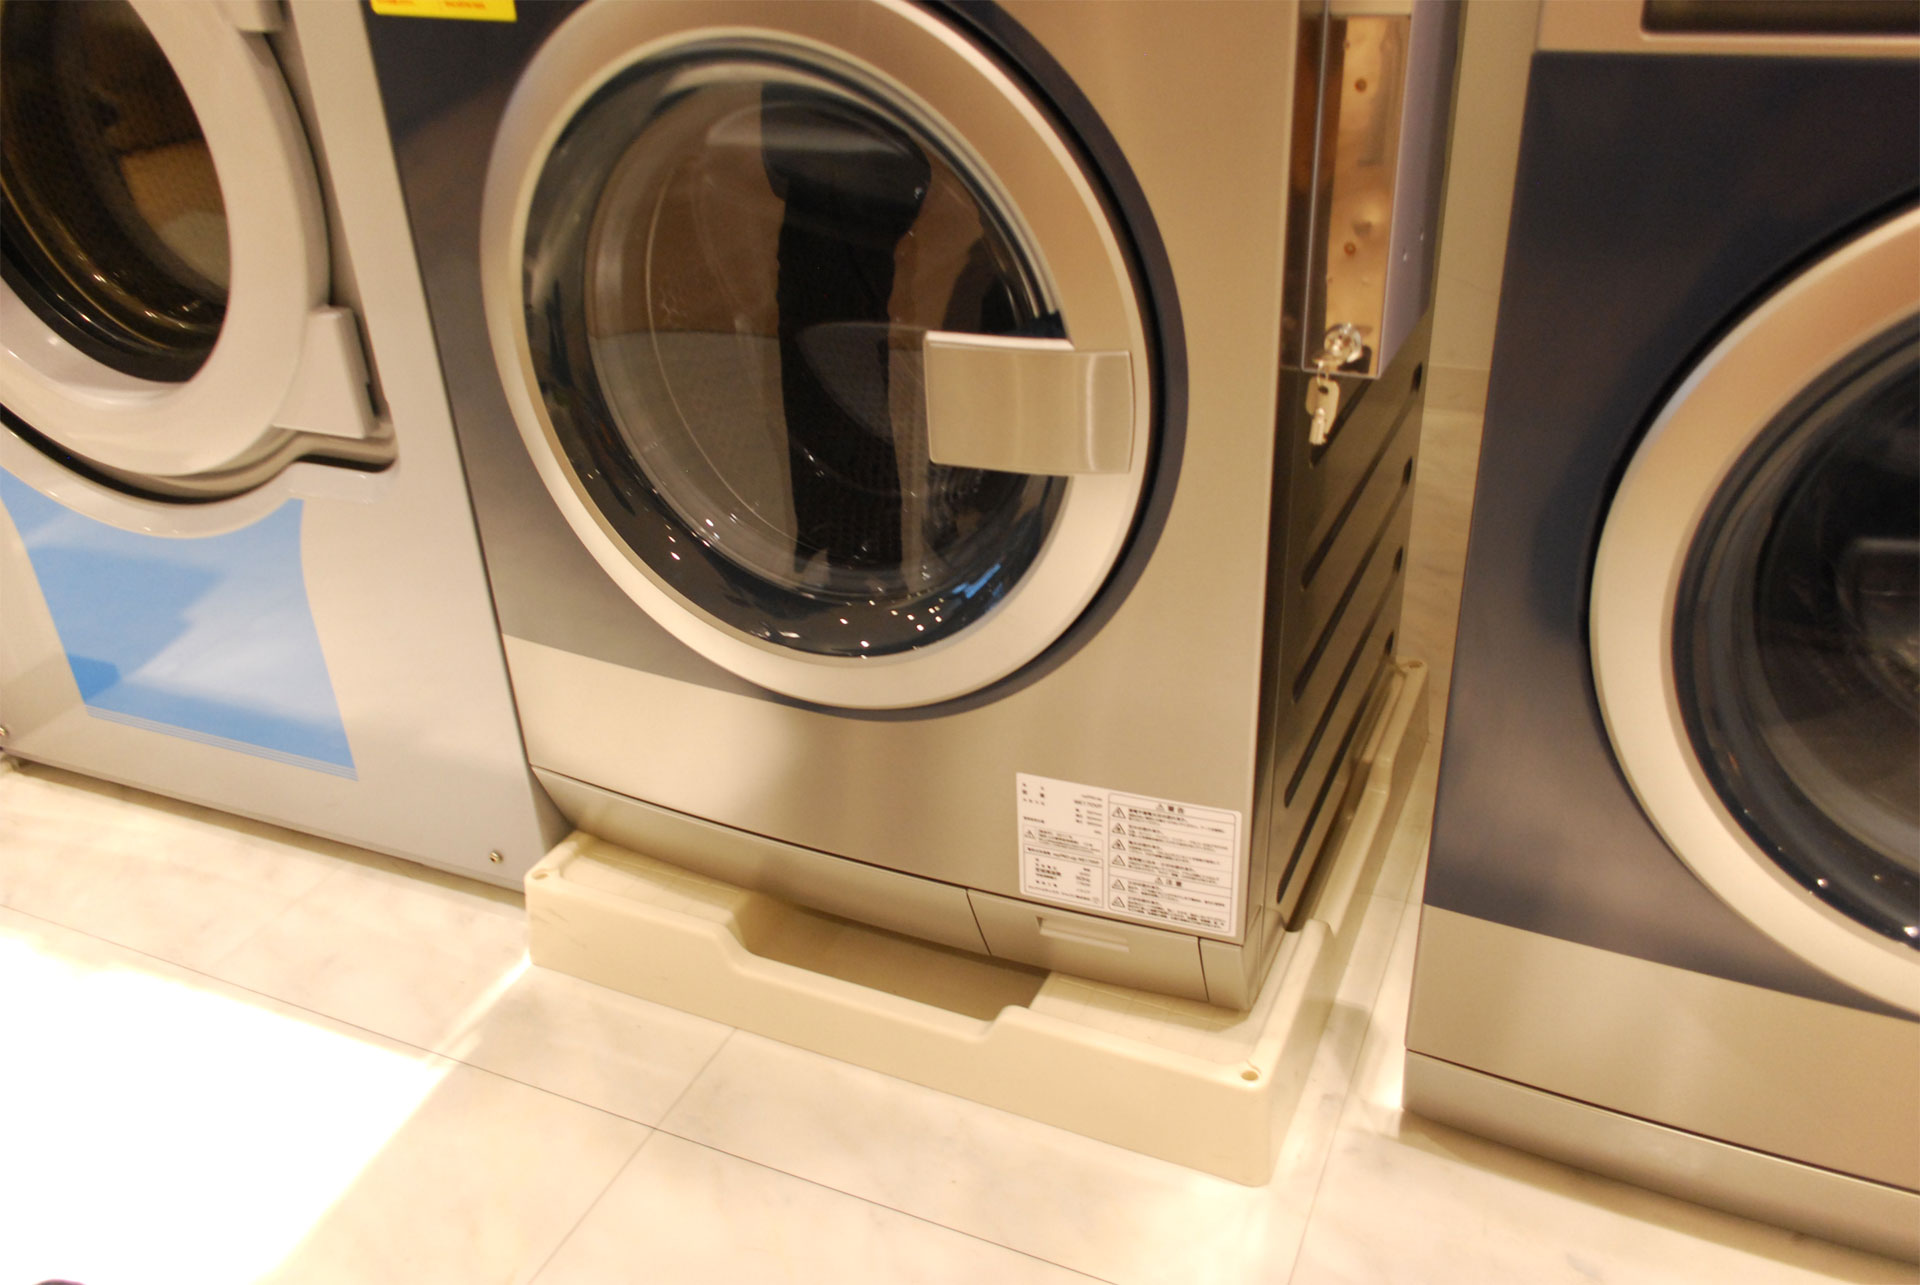 エレクトロラックスの小型ランドリーシステム「myPROzip(マイプロジップ)」8kg洗濯機WE170VPの防水パン部分